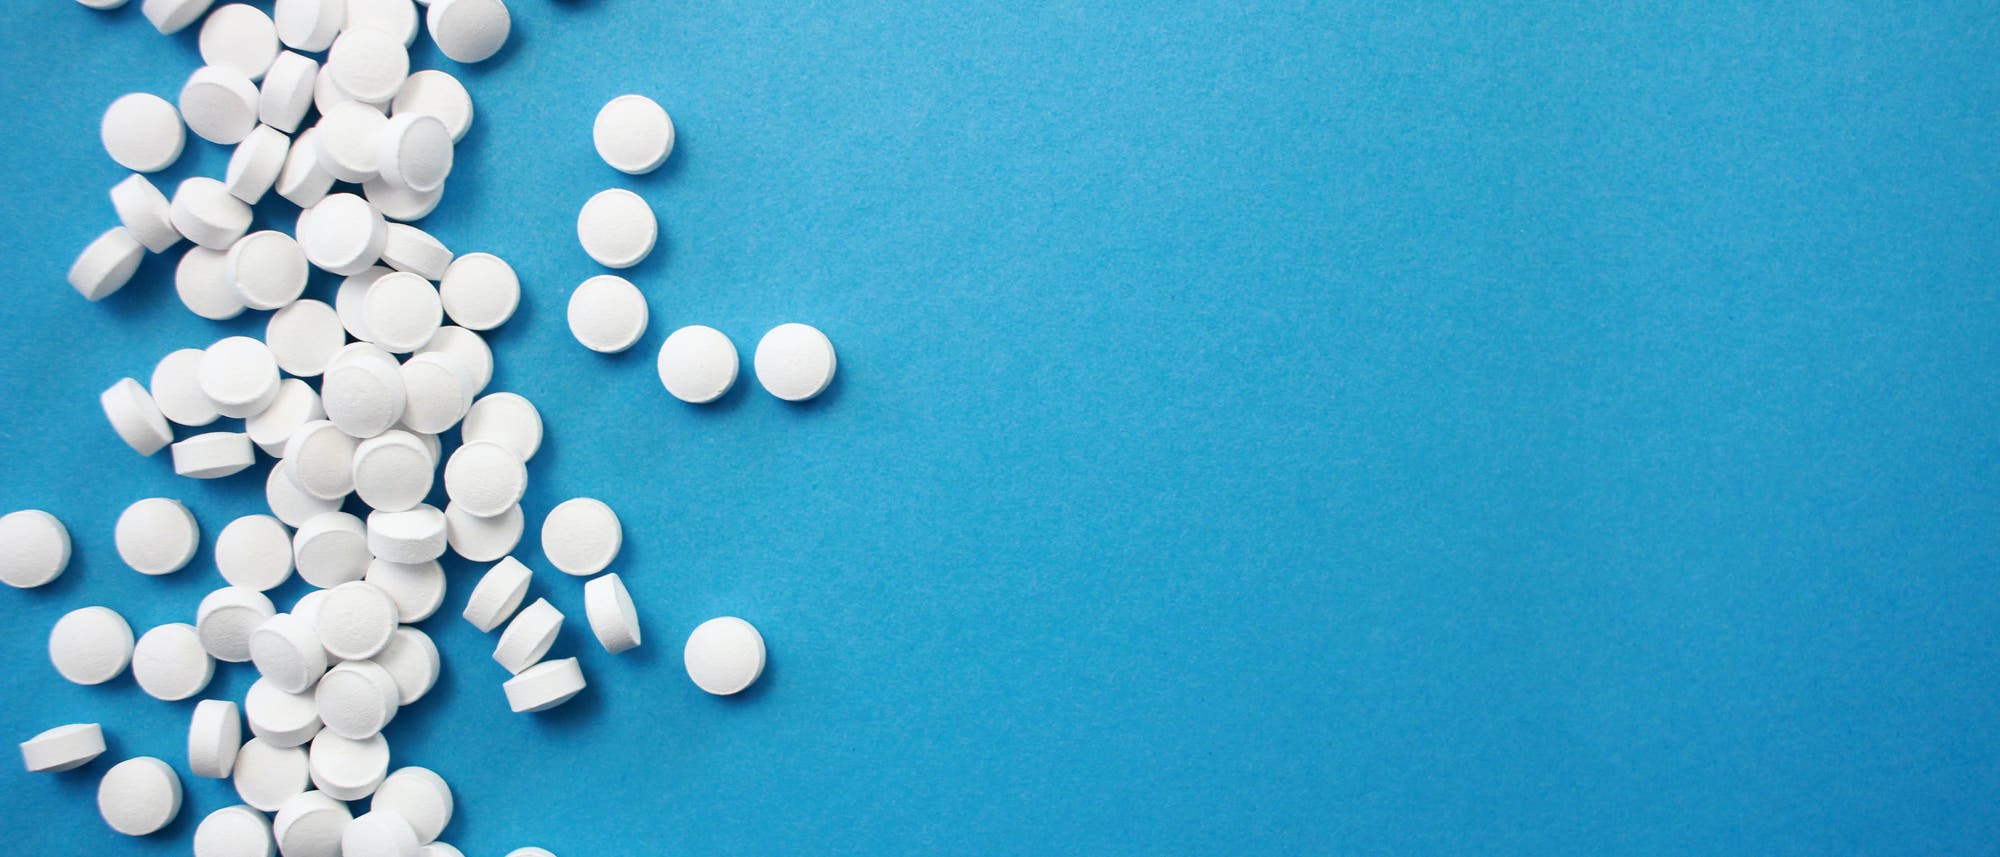 Tabletten mit bis zu 20 Milligramm Pantoprazol sind in Deutschland frei verkäuflich.